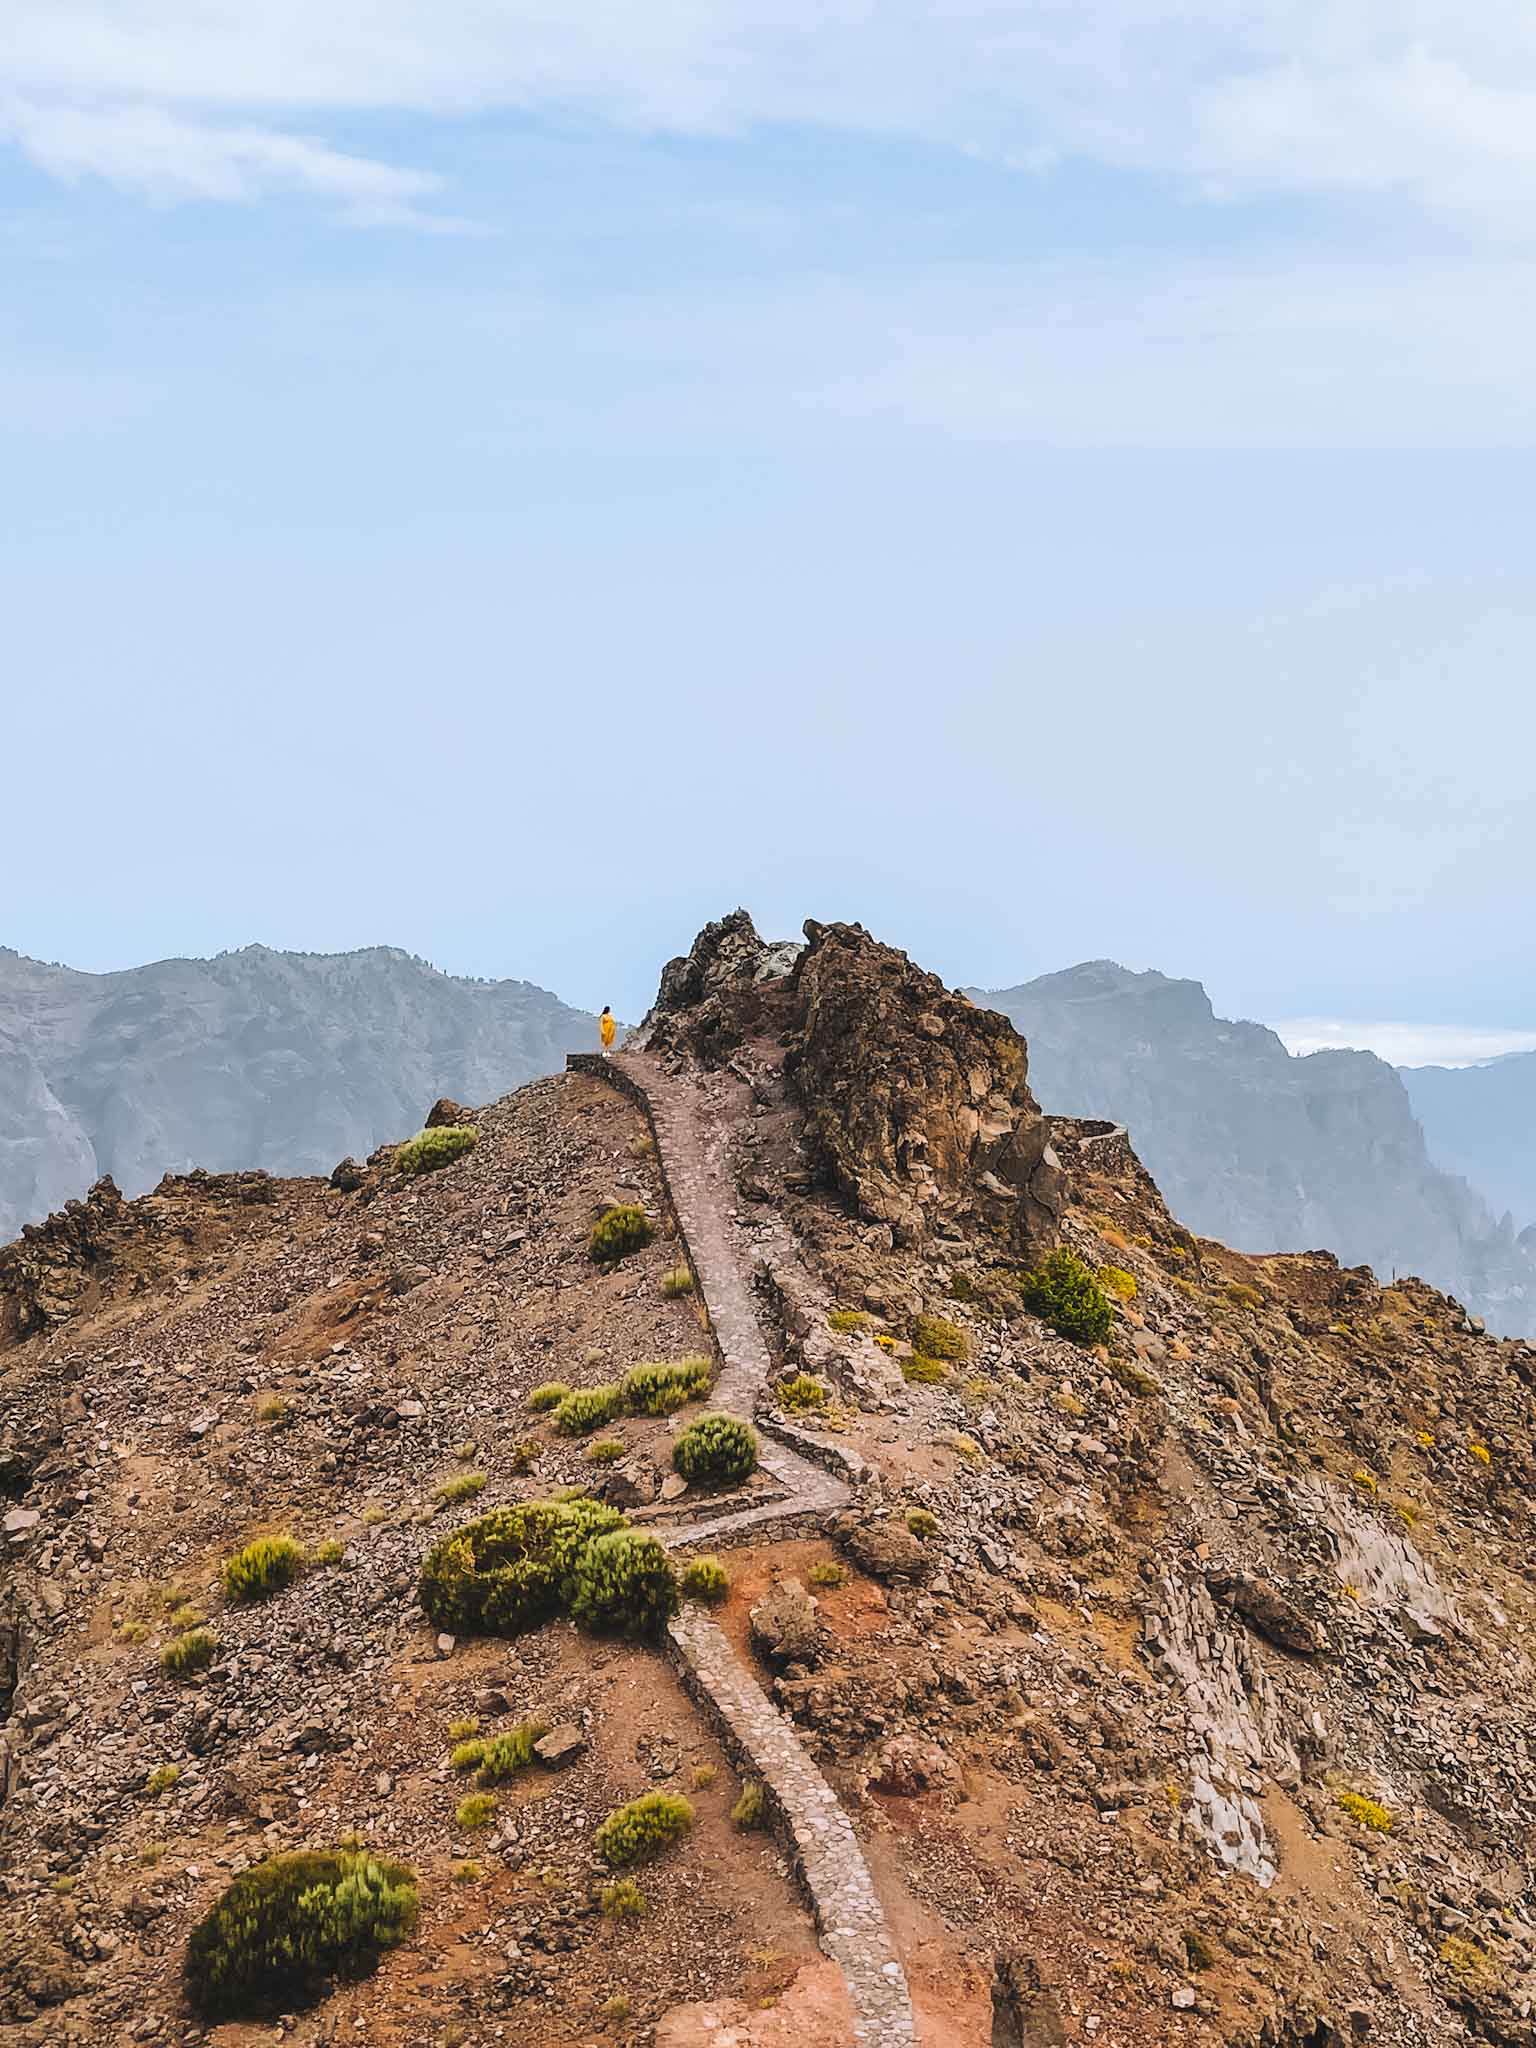 Best Instagram spots in La Palma Canary Islands - Roque de los Muchachos